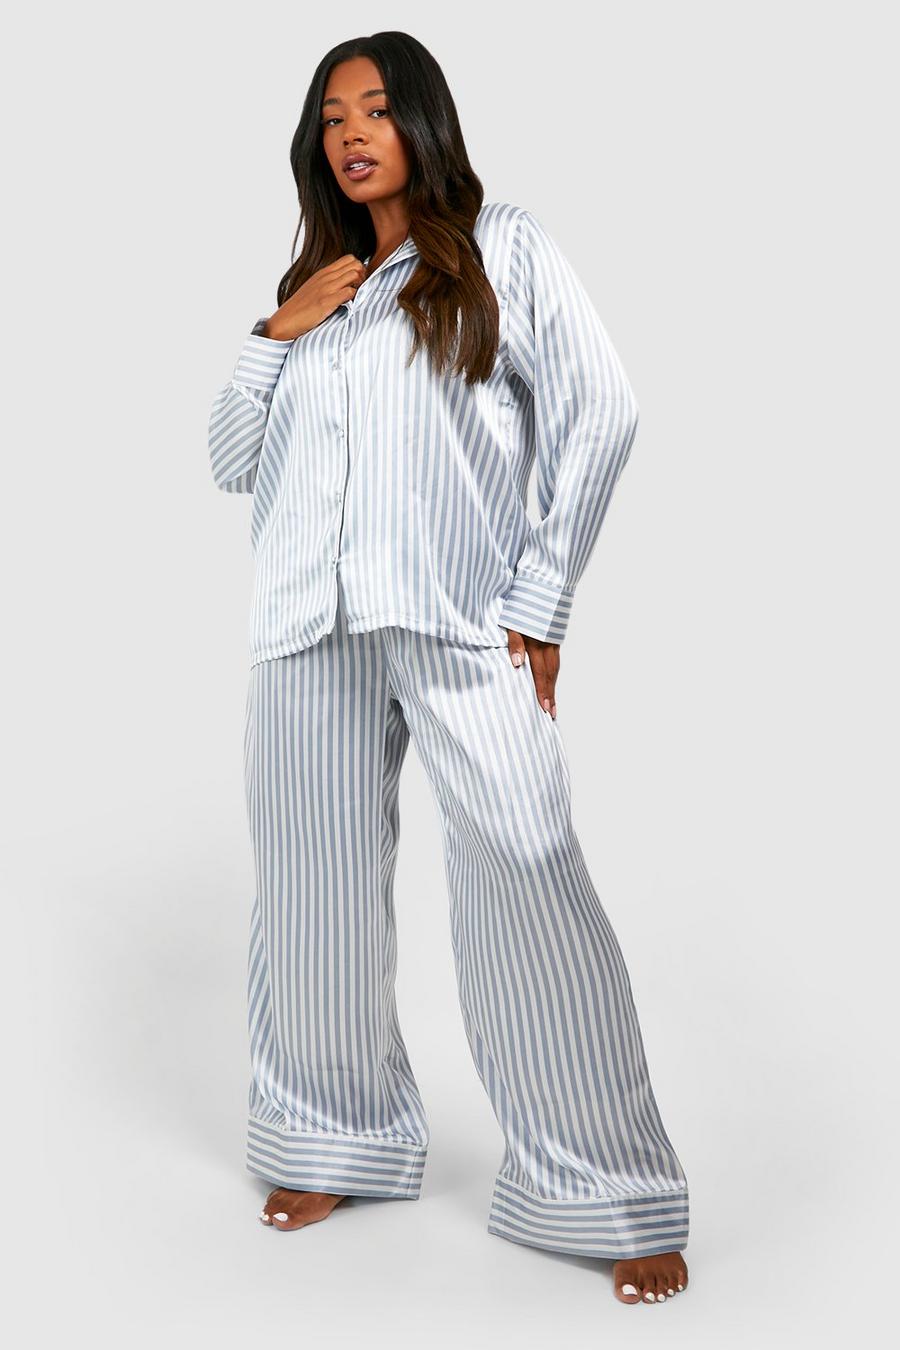  ZHOUXINGB Lingerie for Women Plus Size, Pajamas for